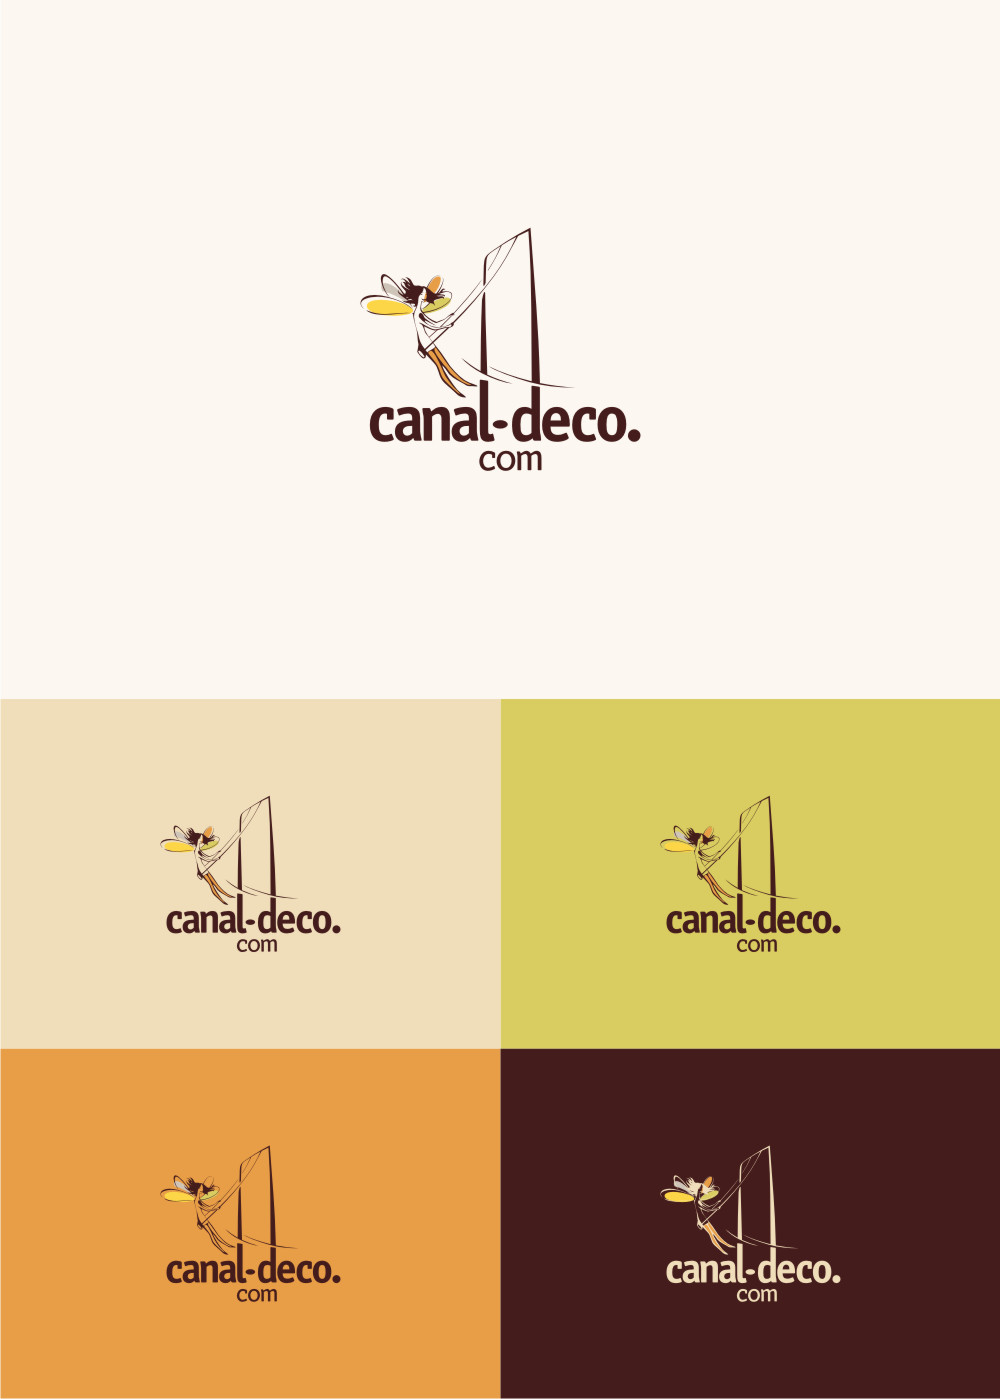 Разработка логотипа для французского интернет-магазина Canal-deco.com